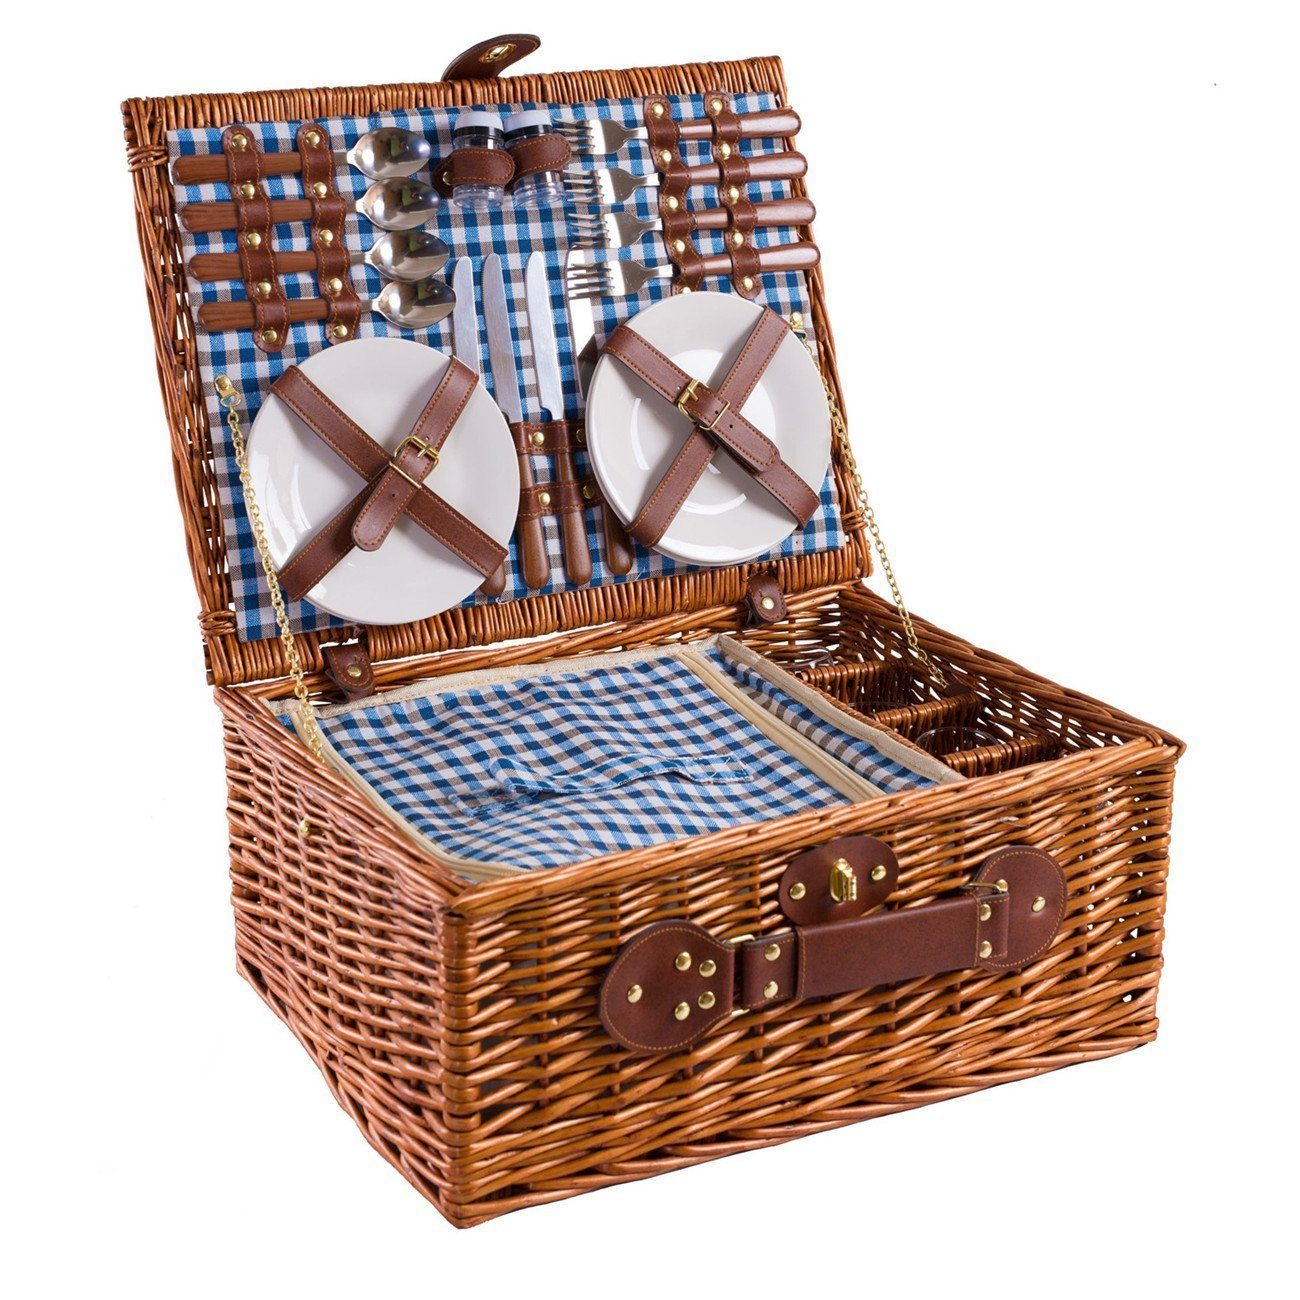 eGenuss Picknickkorb eGenuss Handgefertigter Picknickkorb für 4 (Personen aus Weide, mit 4 Löffel, 4 Gabeln, 4 Messer, 4 Keramikteller, 4 Weingläser,etc), 46 x 36 x 20 cm Blau